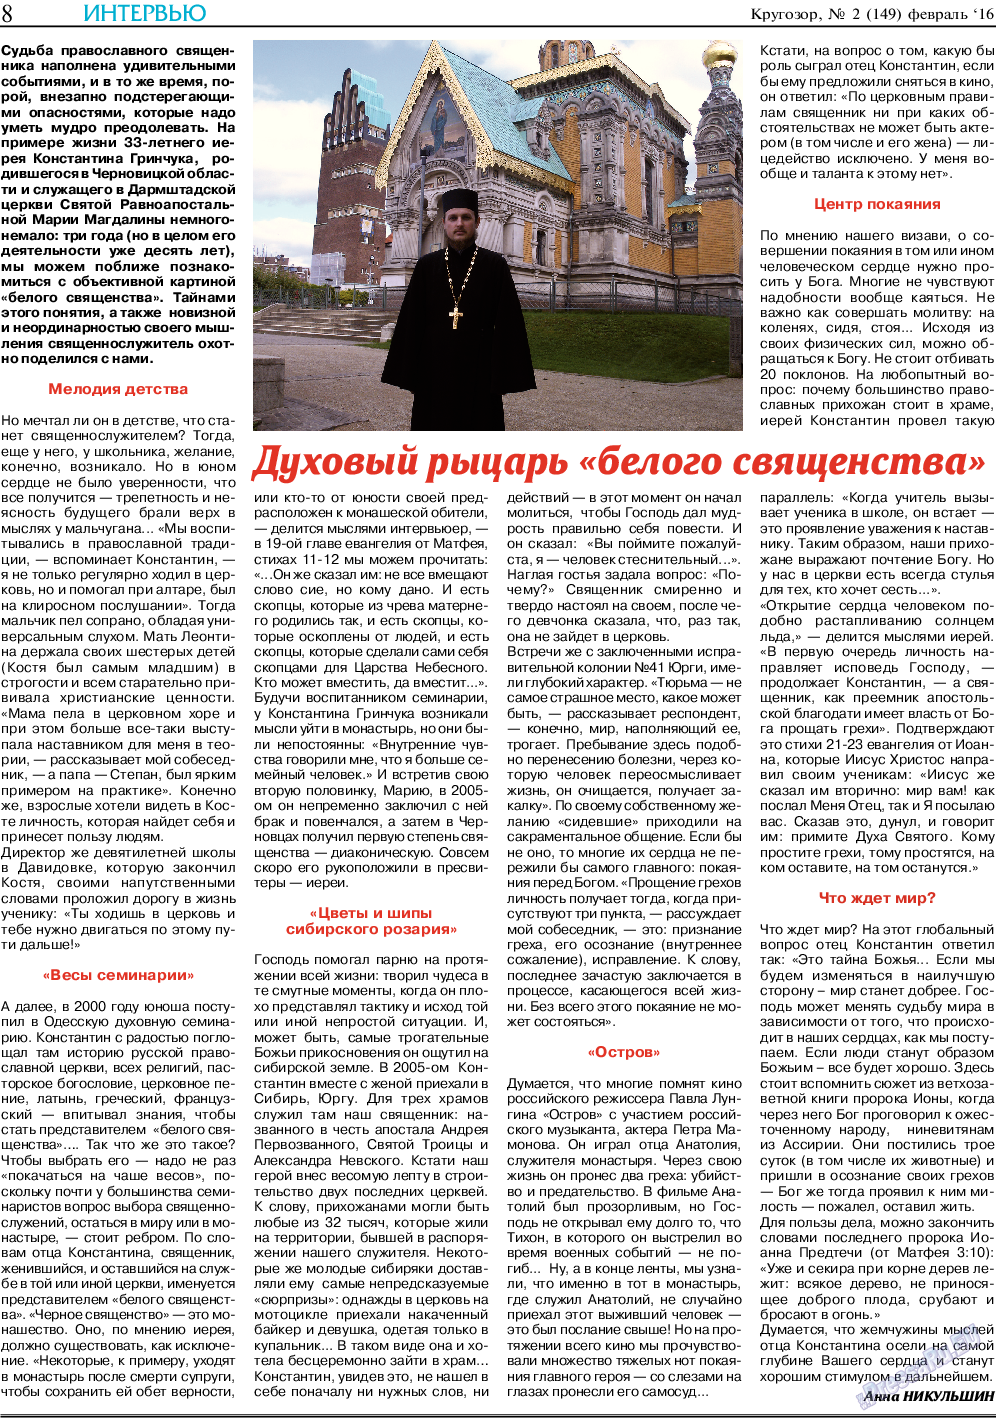 Кругозор, газета. 2016 №2 стр.8